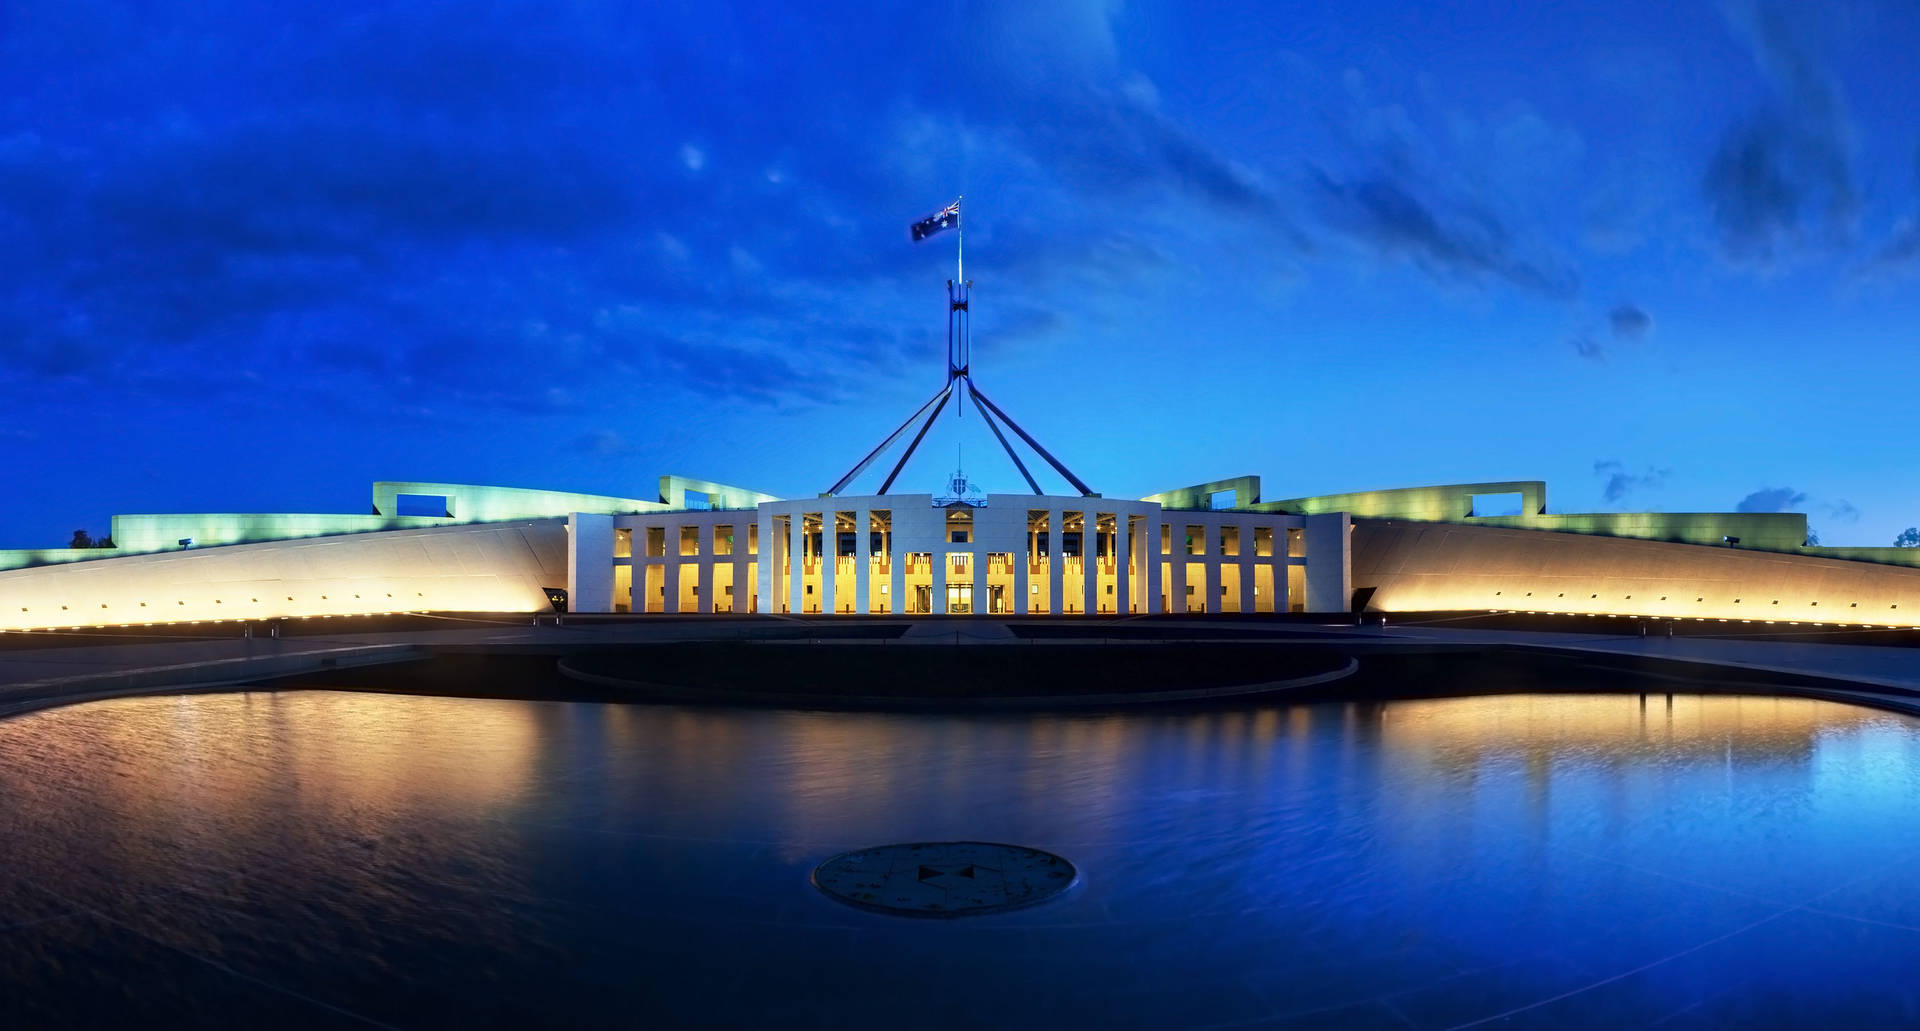 Canberra Parliament House Nighttime Photograph Wallpaper